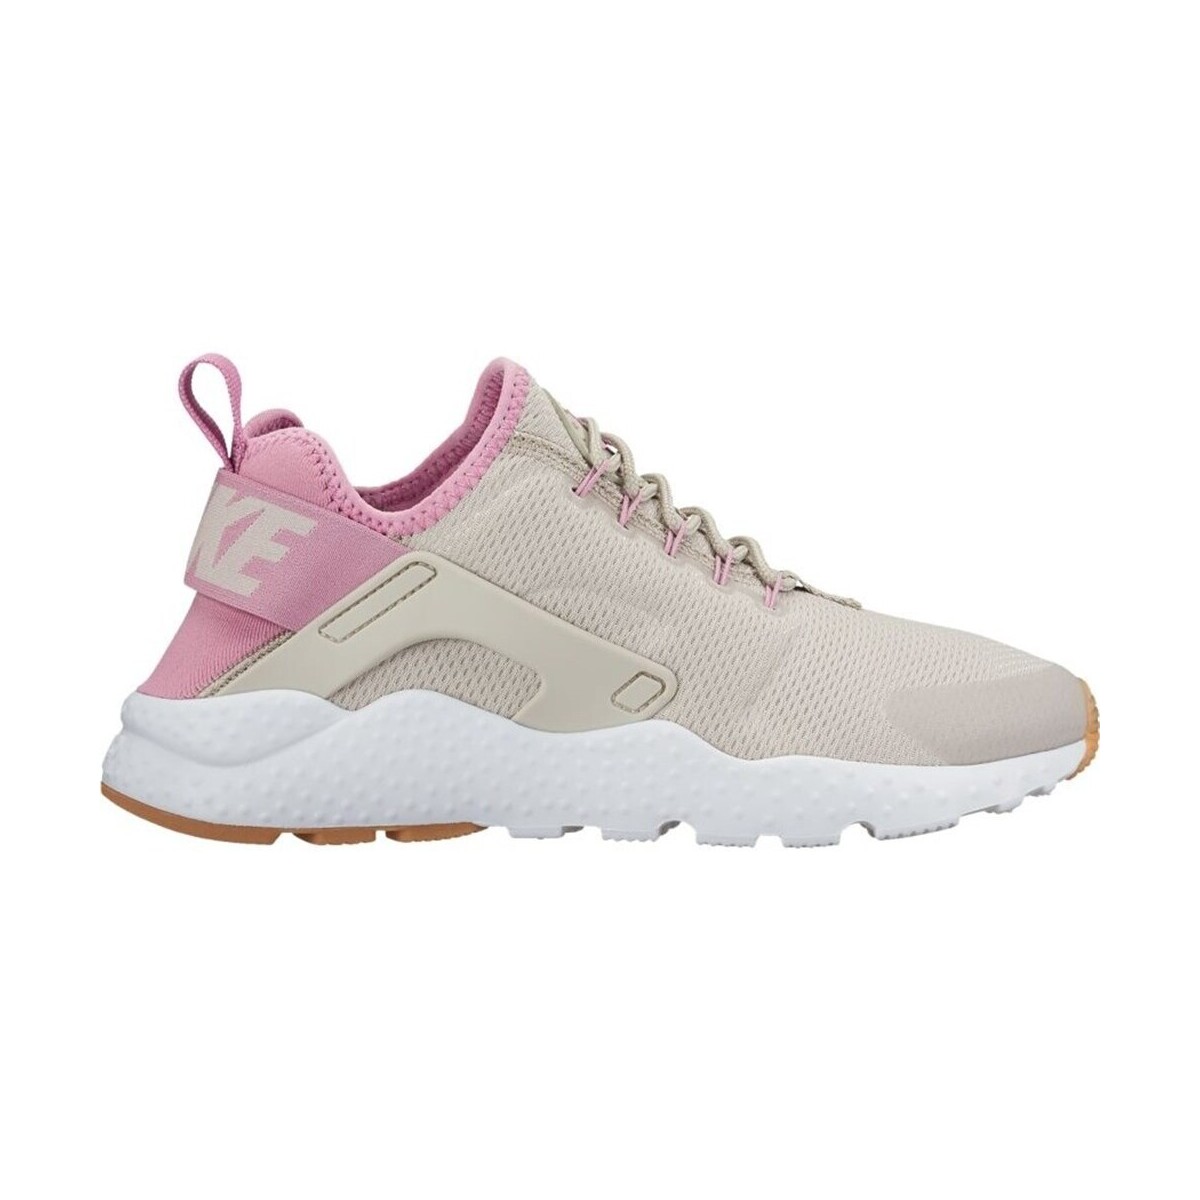 Shoes Women Running shoes Nike Air Huarache Run Ultra Beige, Pink